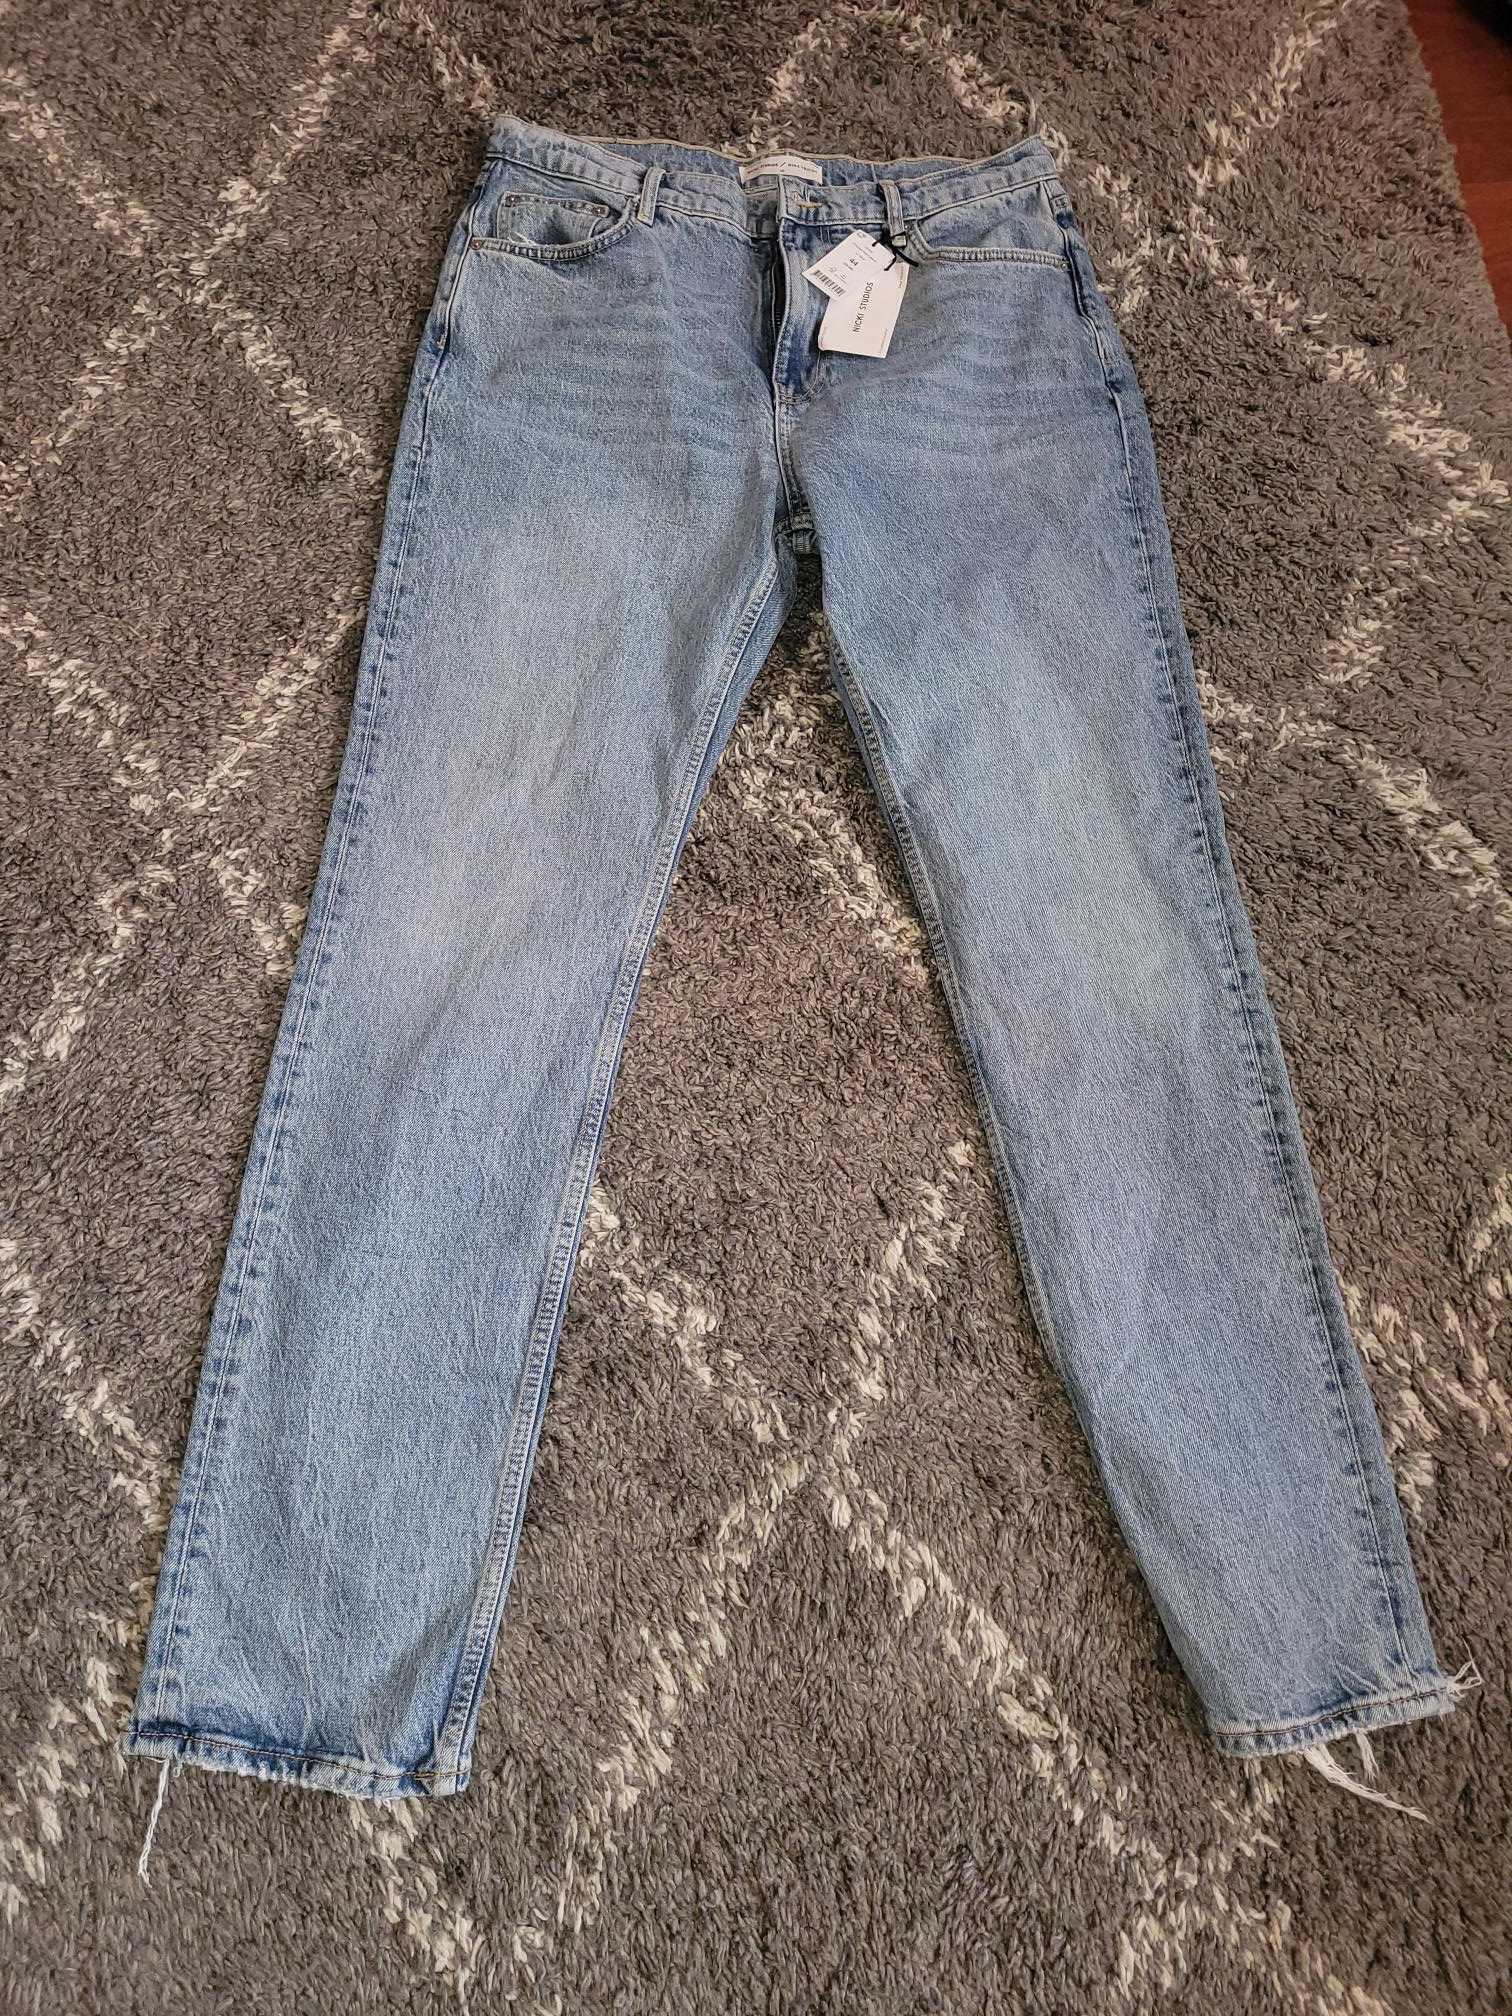 Spodnie jeansy męskie rozmiar 32/45 marki Nicki Studios.